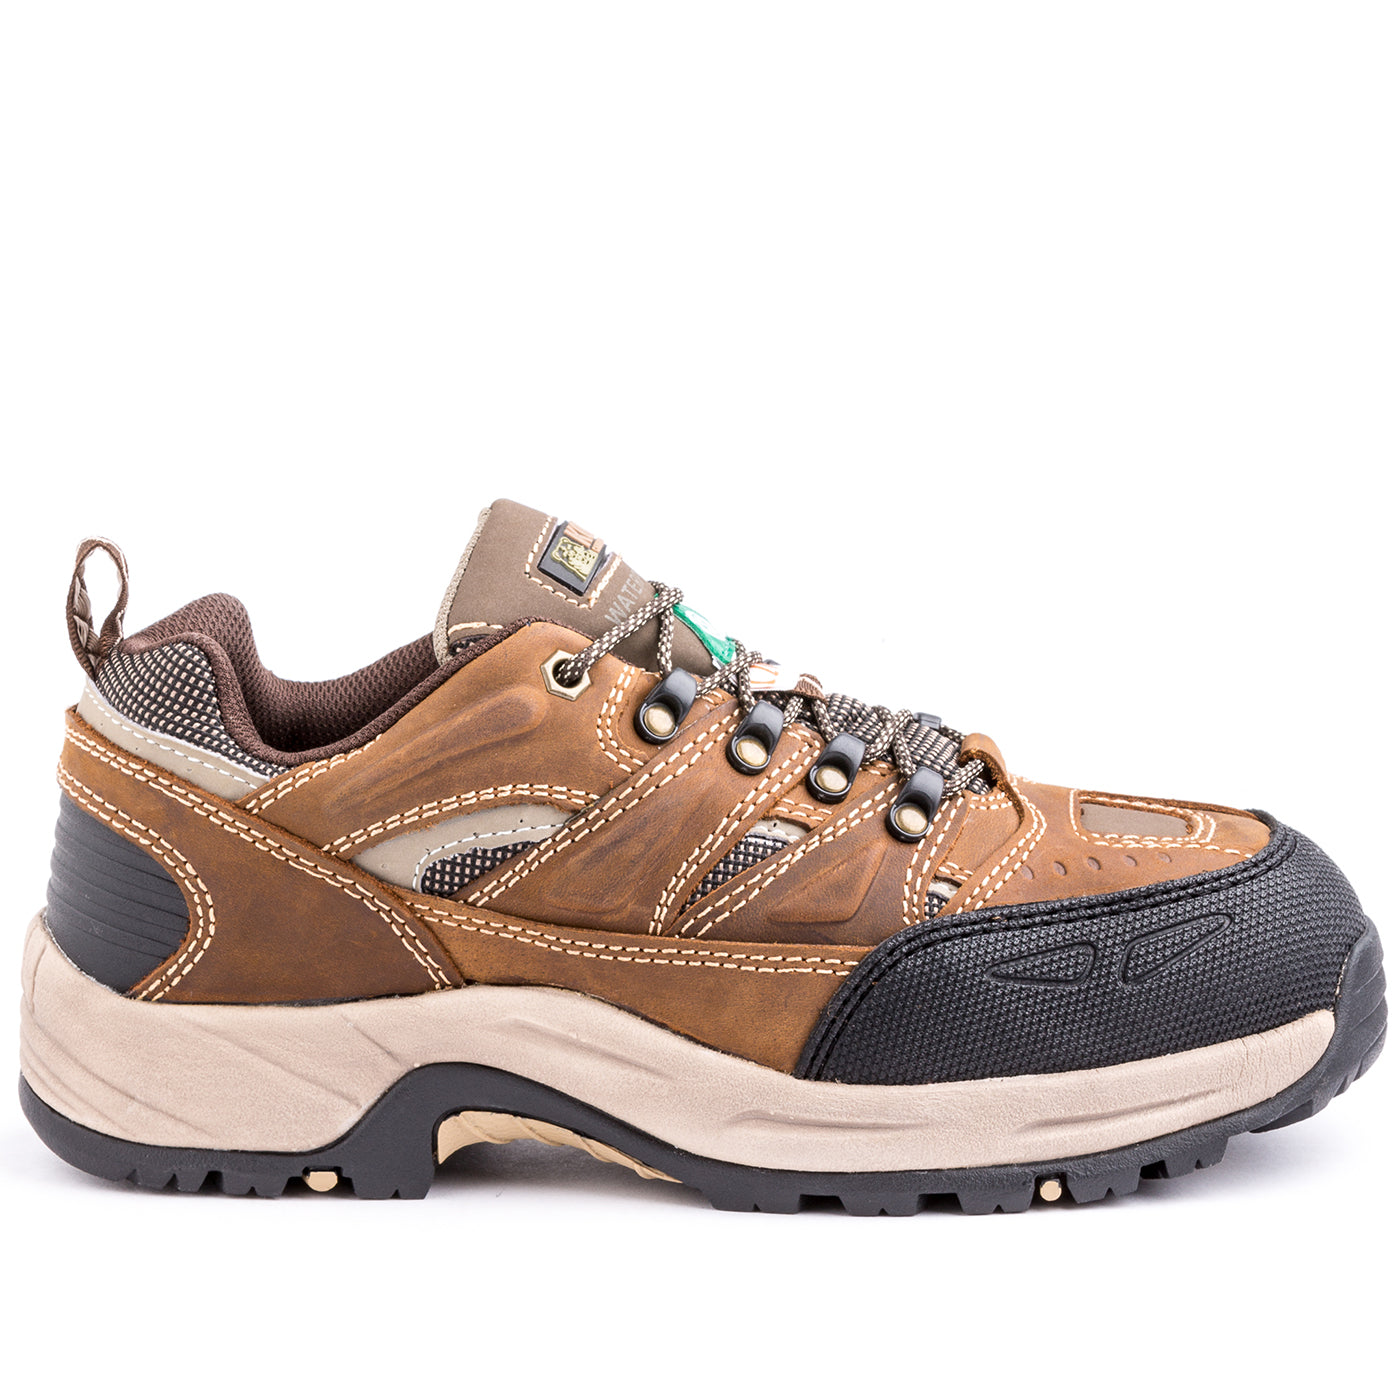 Kodiak Buckeye Men's Waterproof Steel Toe Hiker Safety Work Shoes | Brown | Sizes 7 - 14 Work Boots - Cleanflow